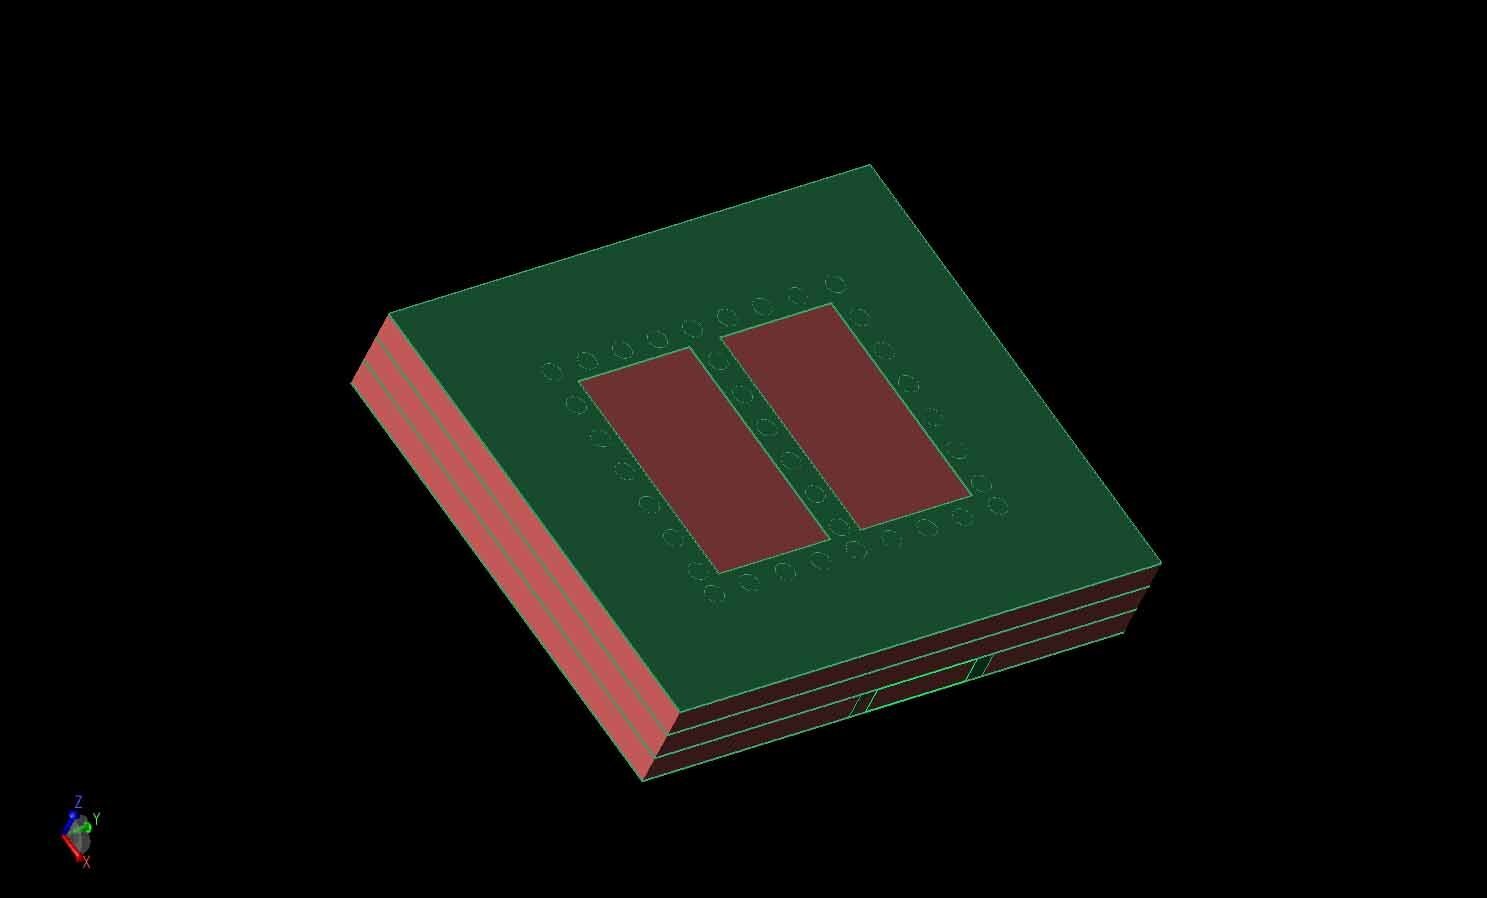 Figura 1: Representación CAD tridimensional del elemento de antena 2x2 excitado por SIC, con las capas metálicas en verde y las capas LTCC en rojo.